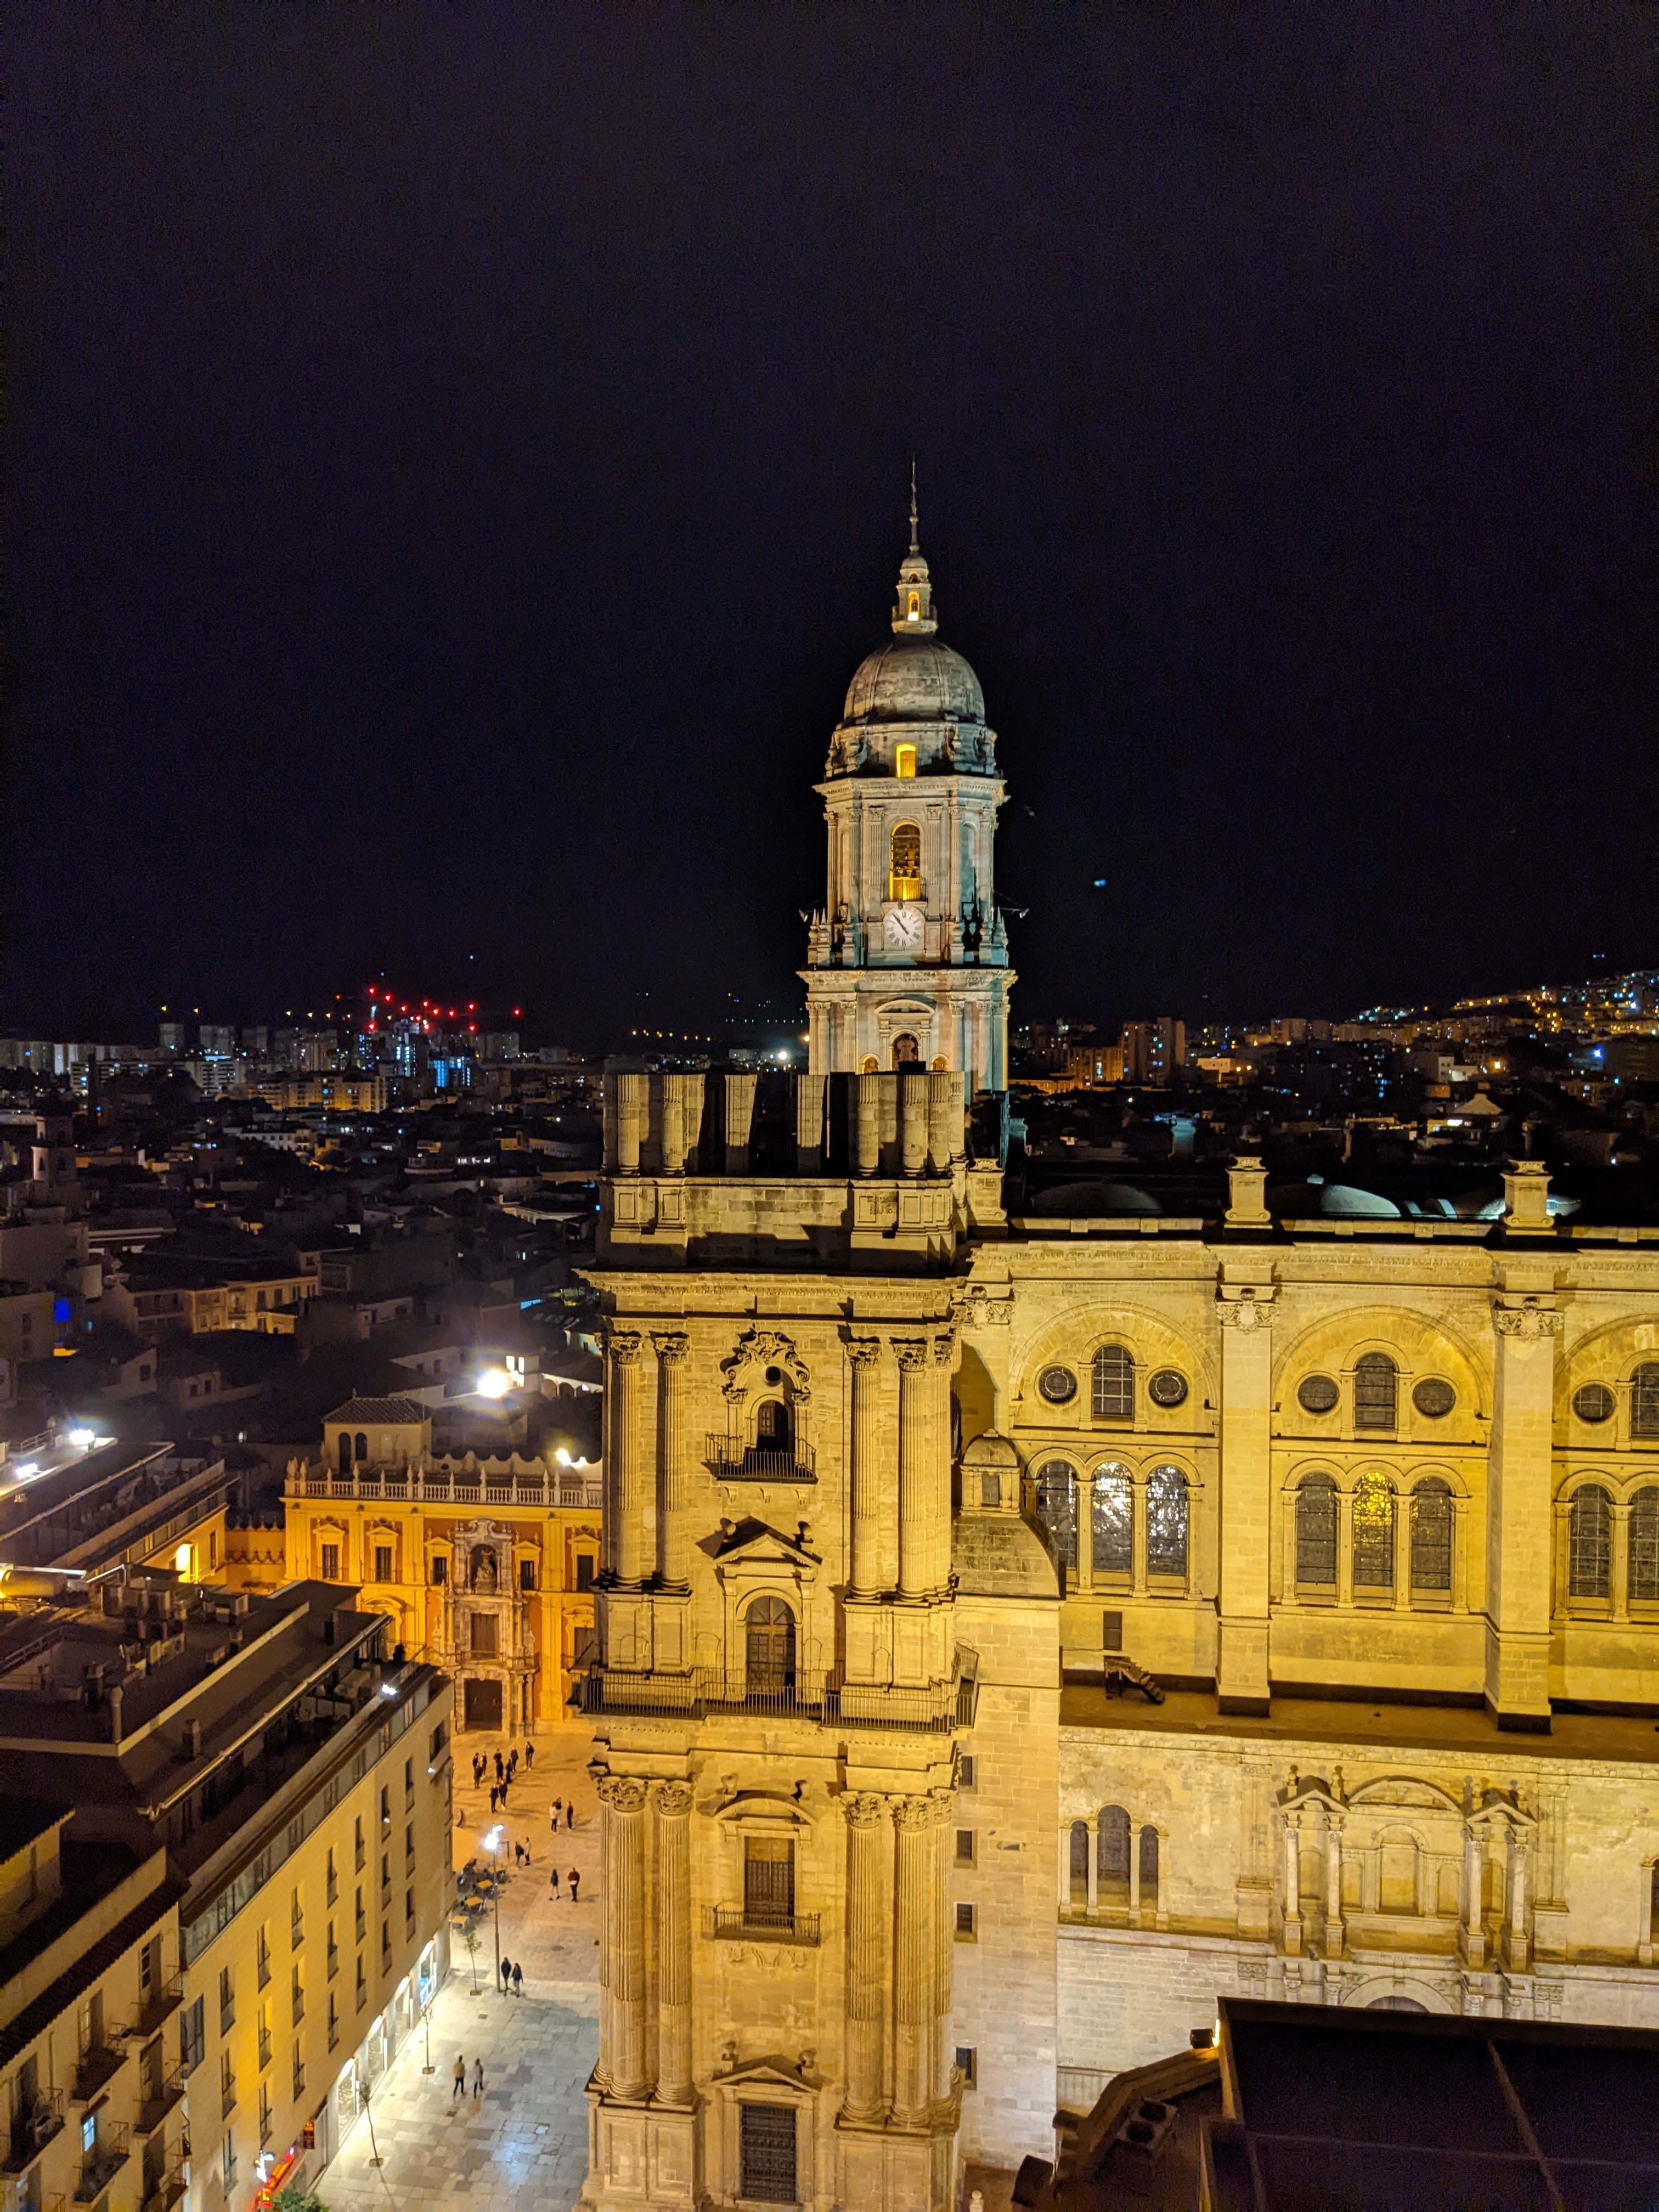 Malaga Cathedral from far away at night